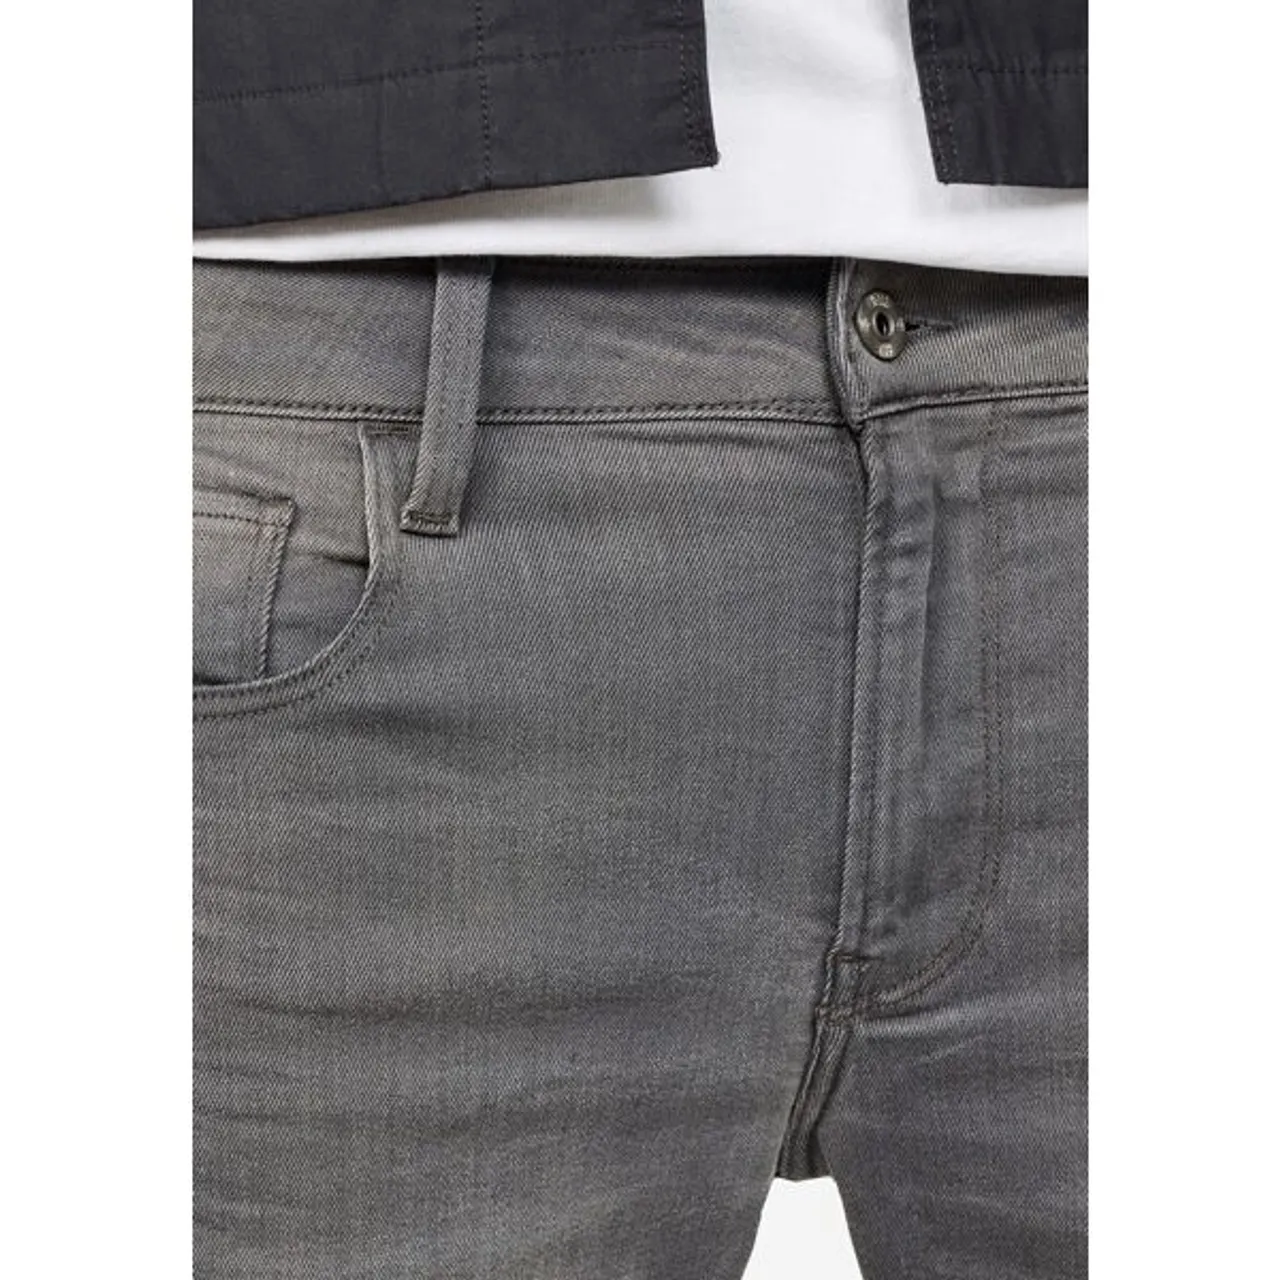 Shorts G-STAR RAW "3301 Slim 1/2" Gr. 33, N-Gr, grau (light aged desert) Herren Hosen Shorts